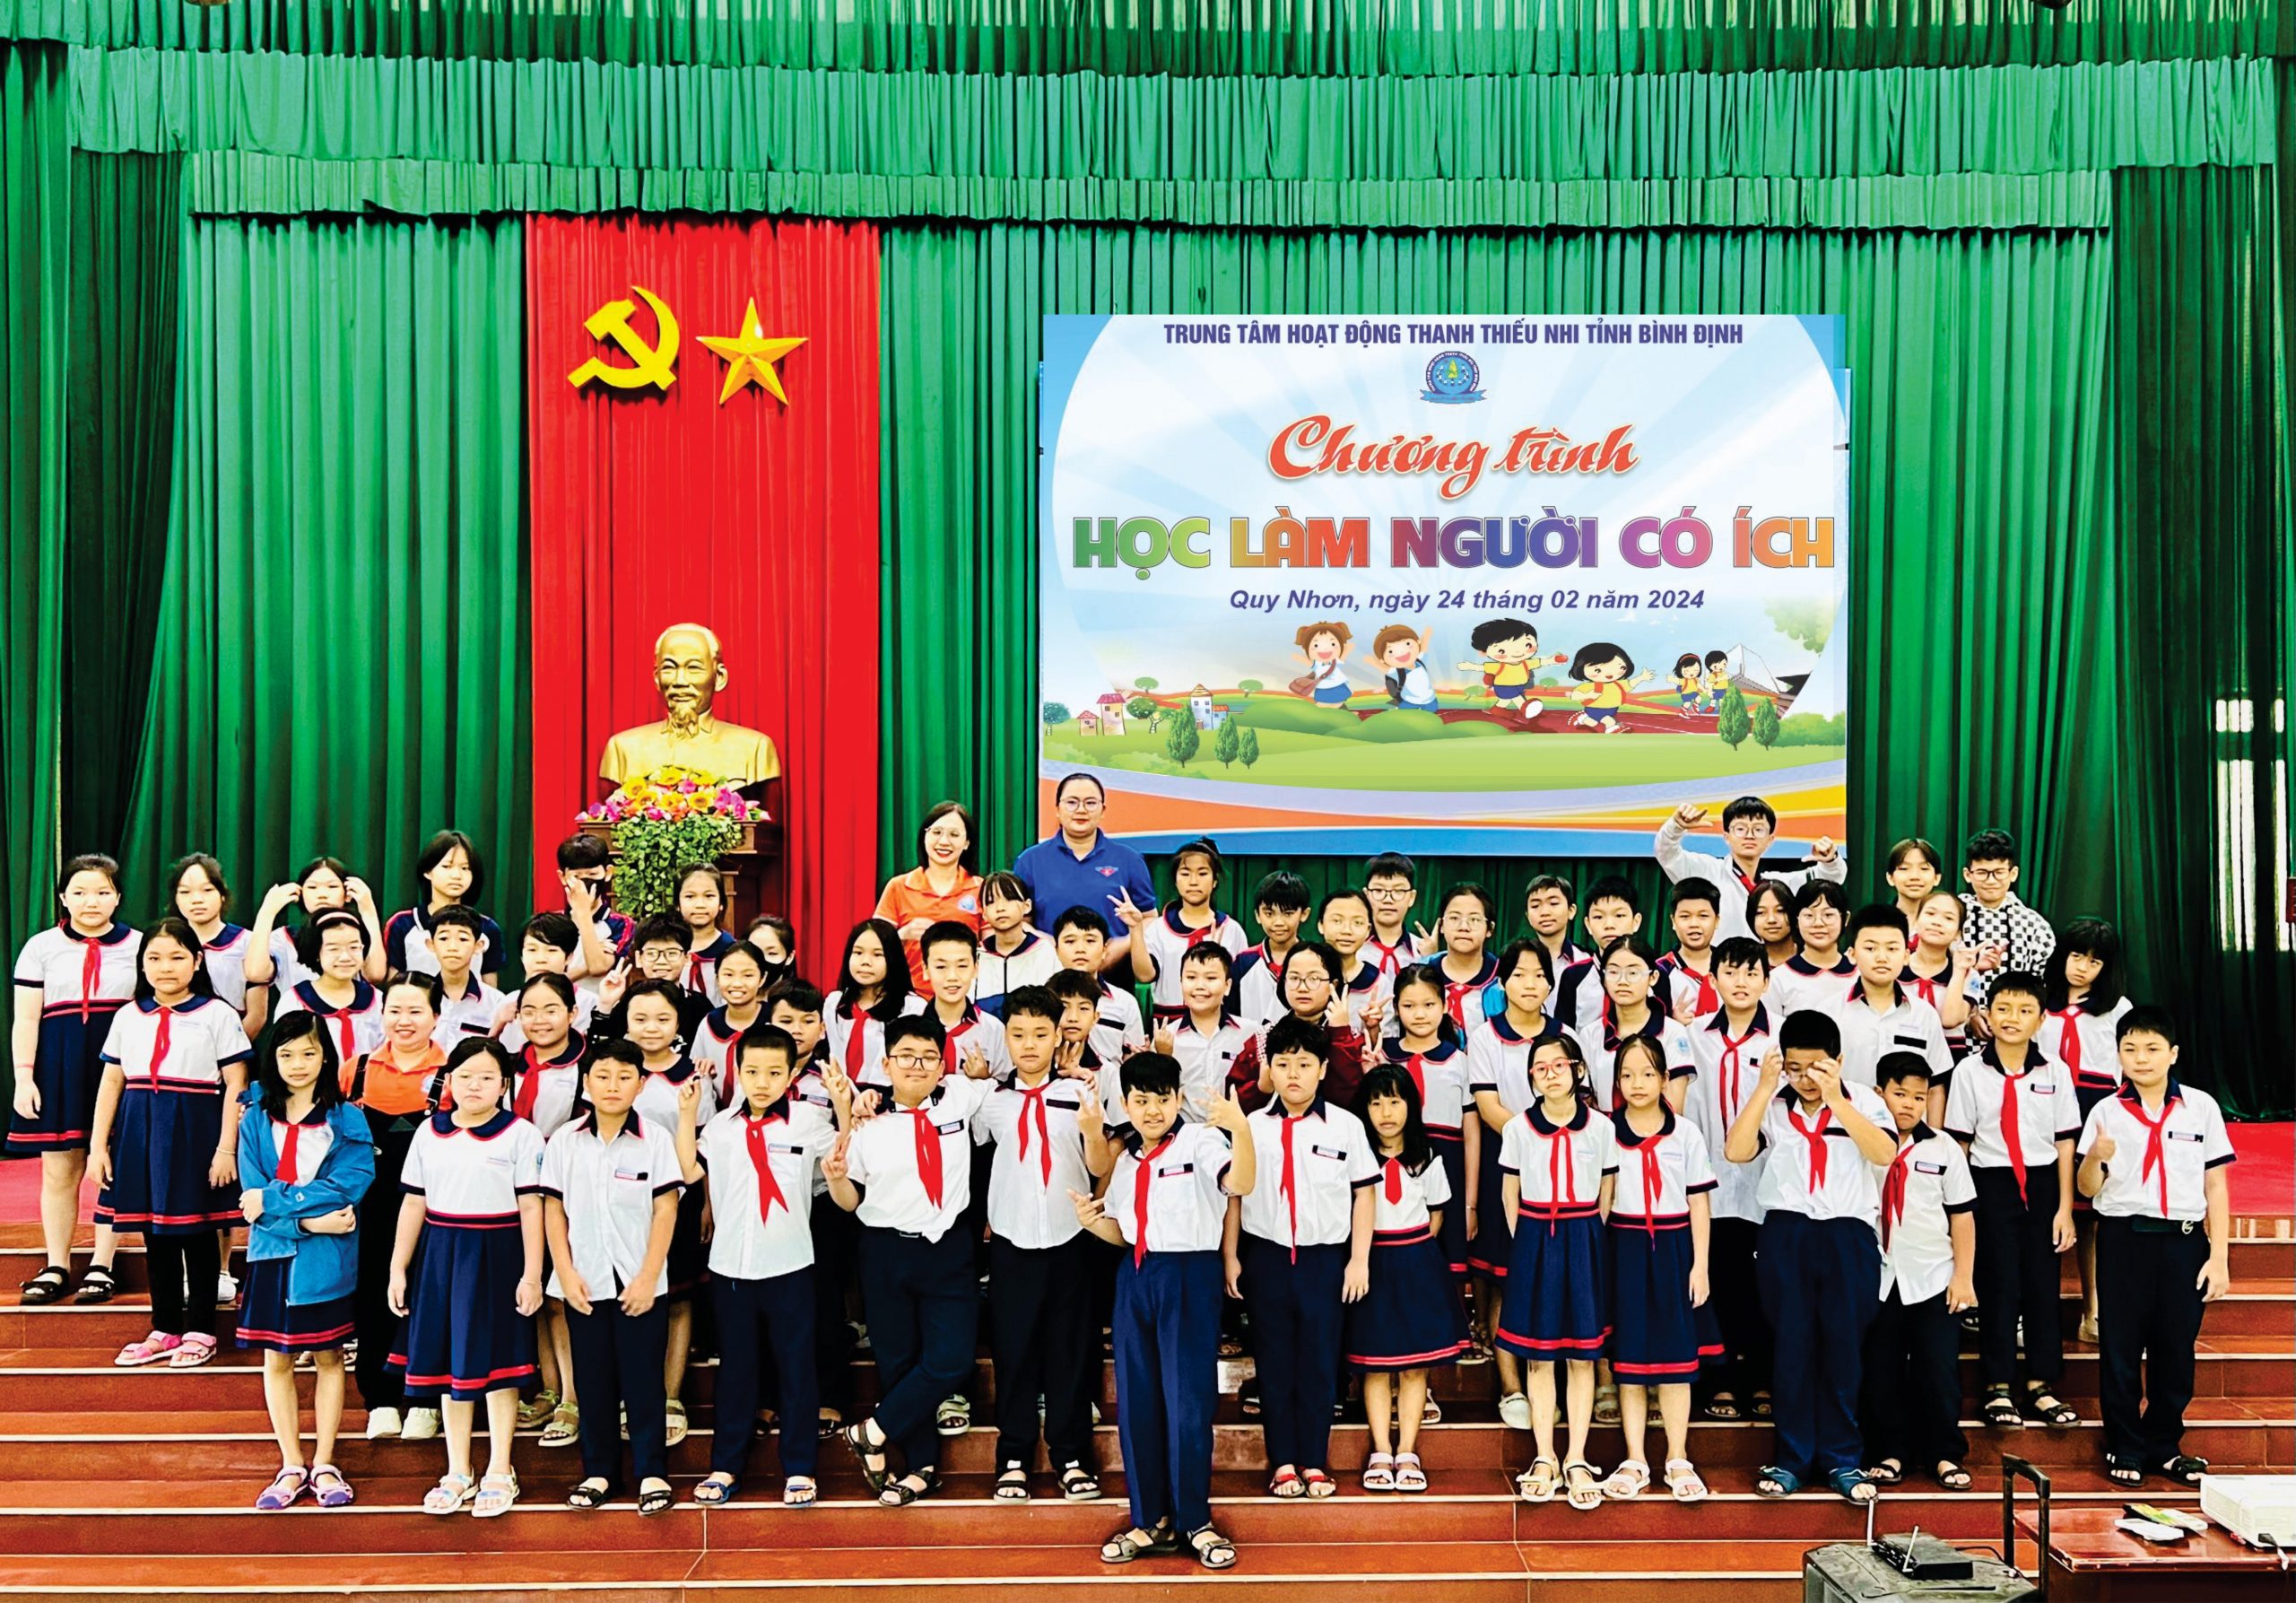 Tổ chức chương trình “Học làm người có ích” cho 200 em học sinh Trường Tiểu học Võ Văn Dũng, thành phố Quy Nhơn.